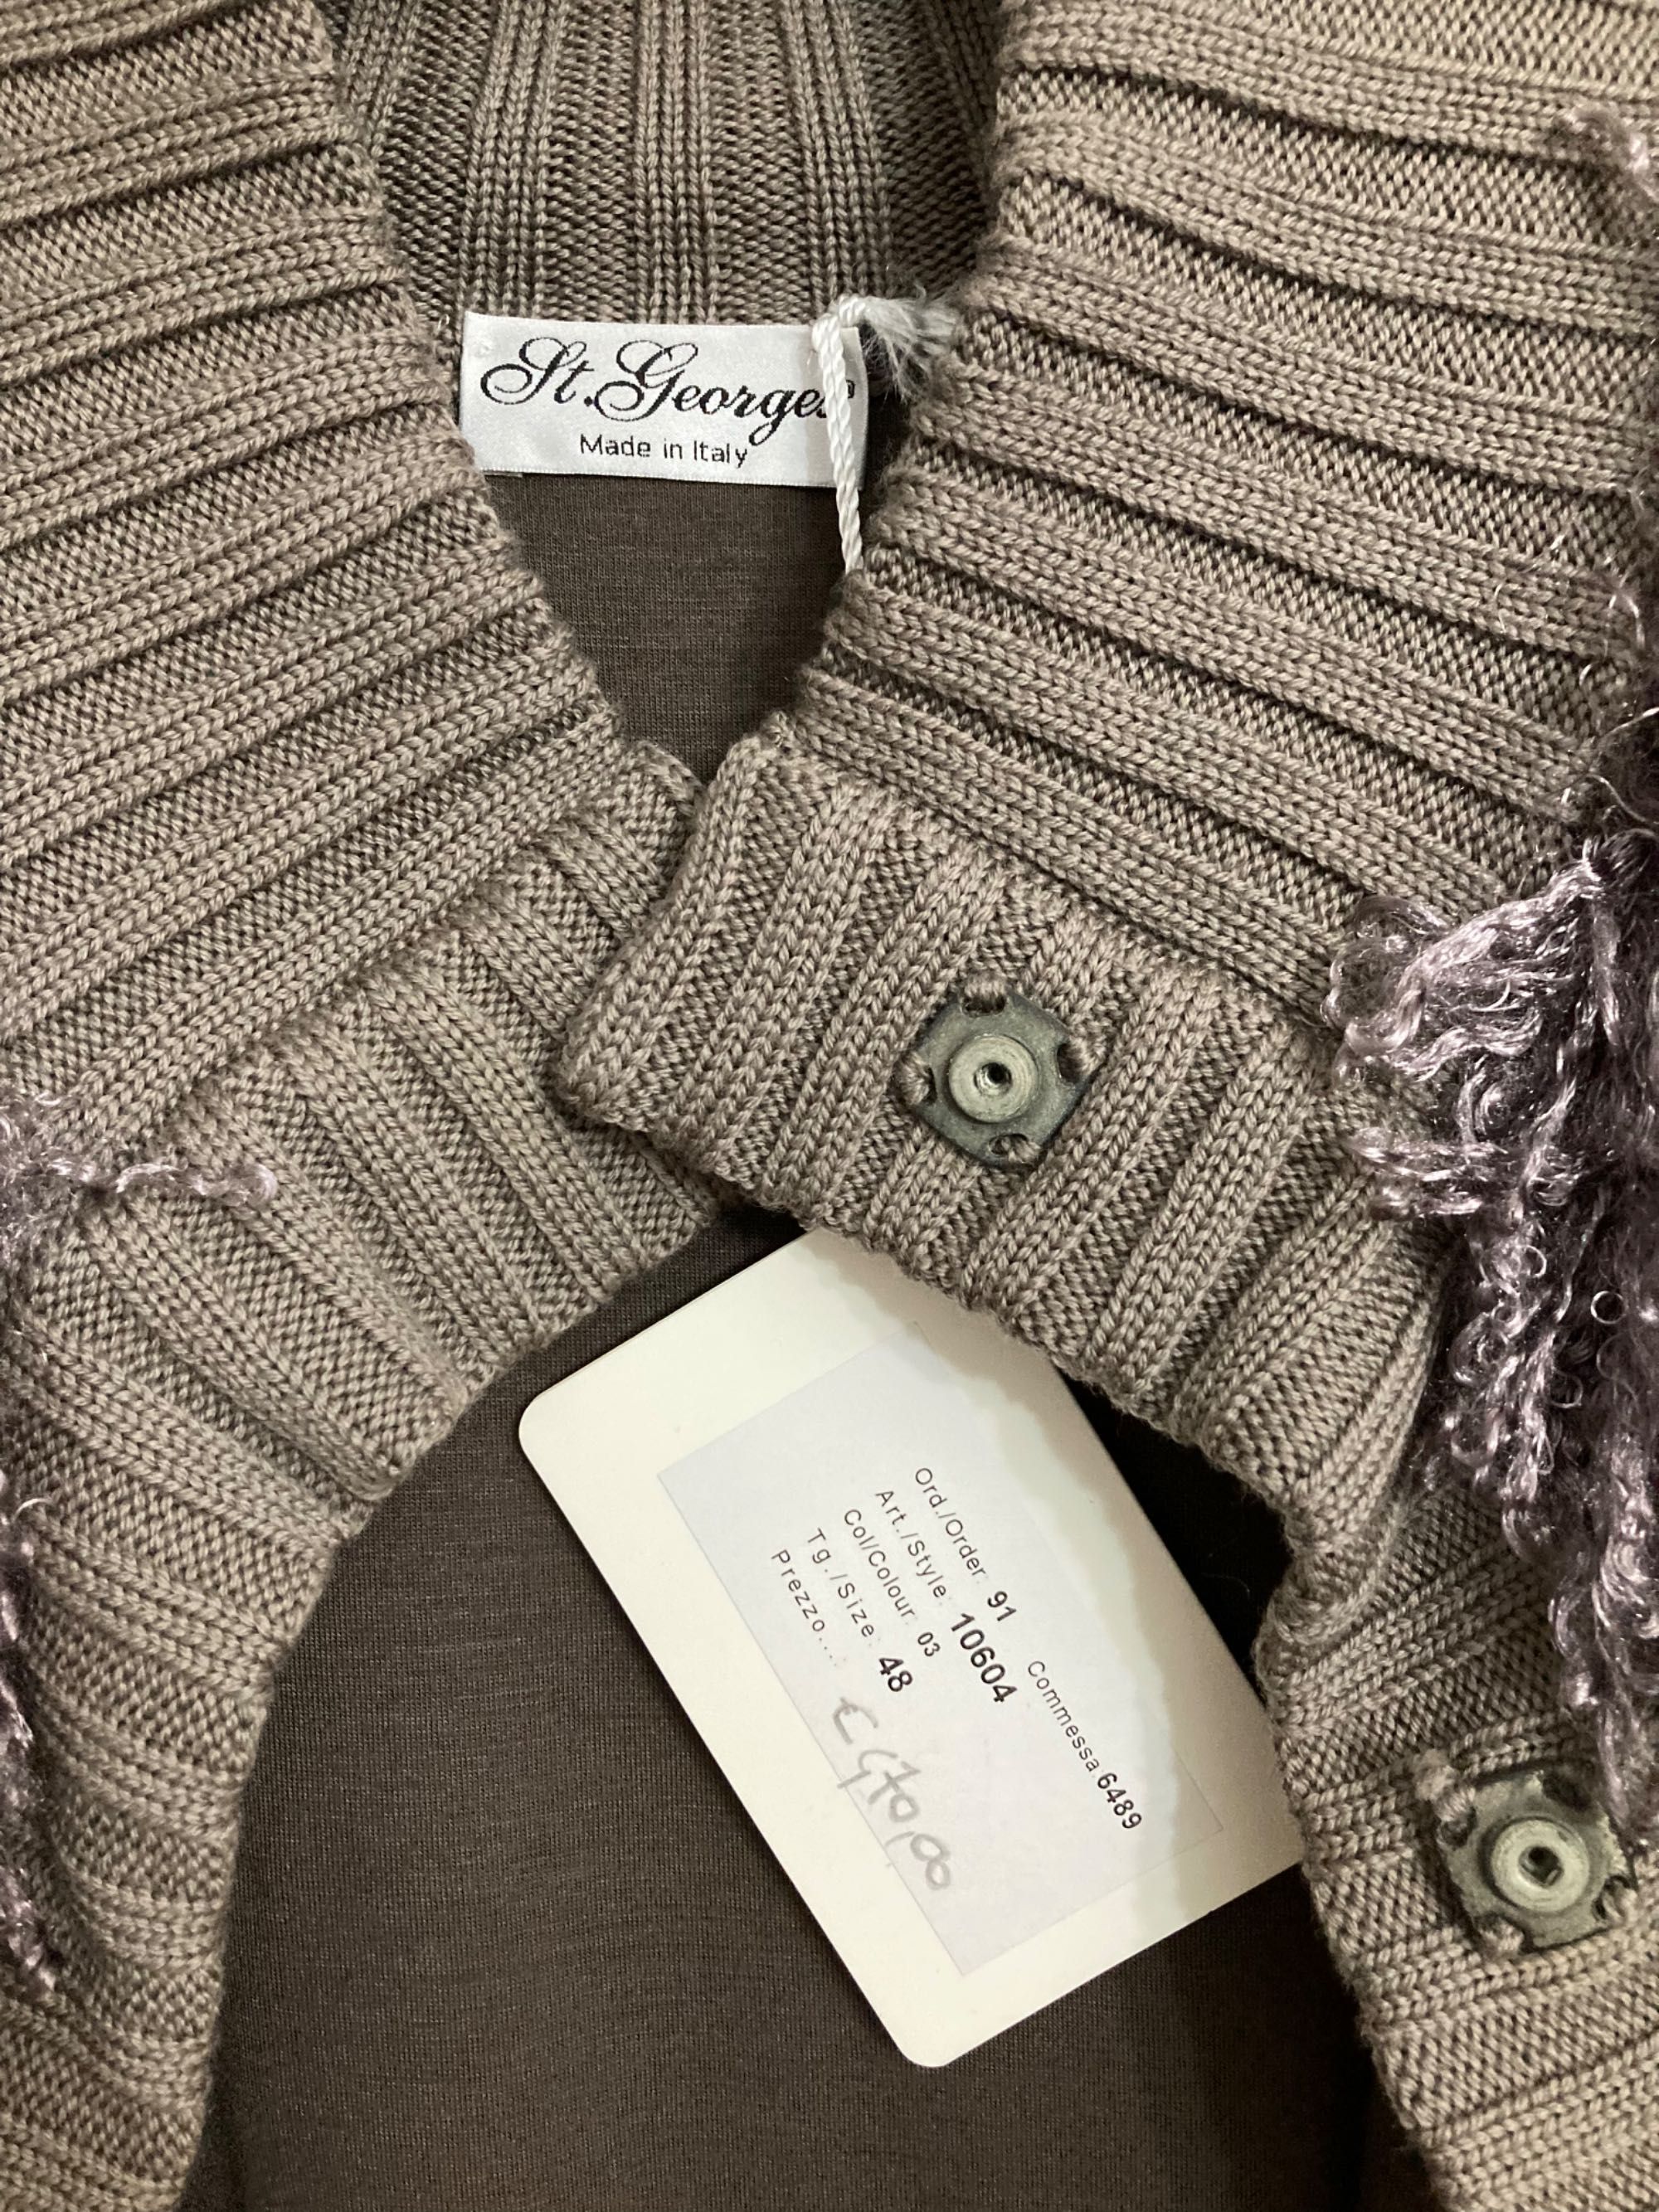 Jacheta din lana Made in Italy, noua, cu eticheta